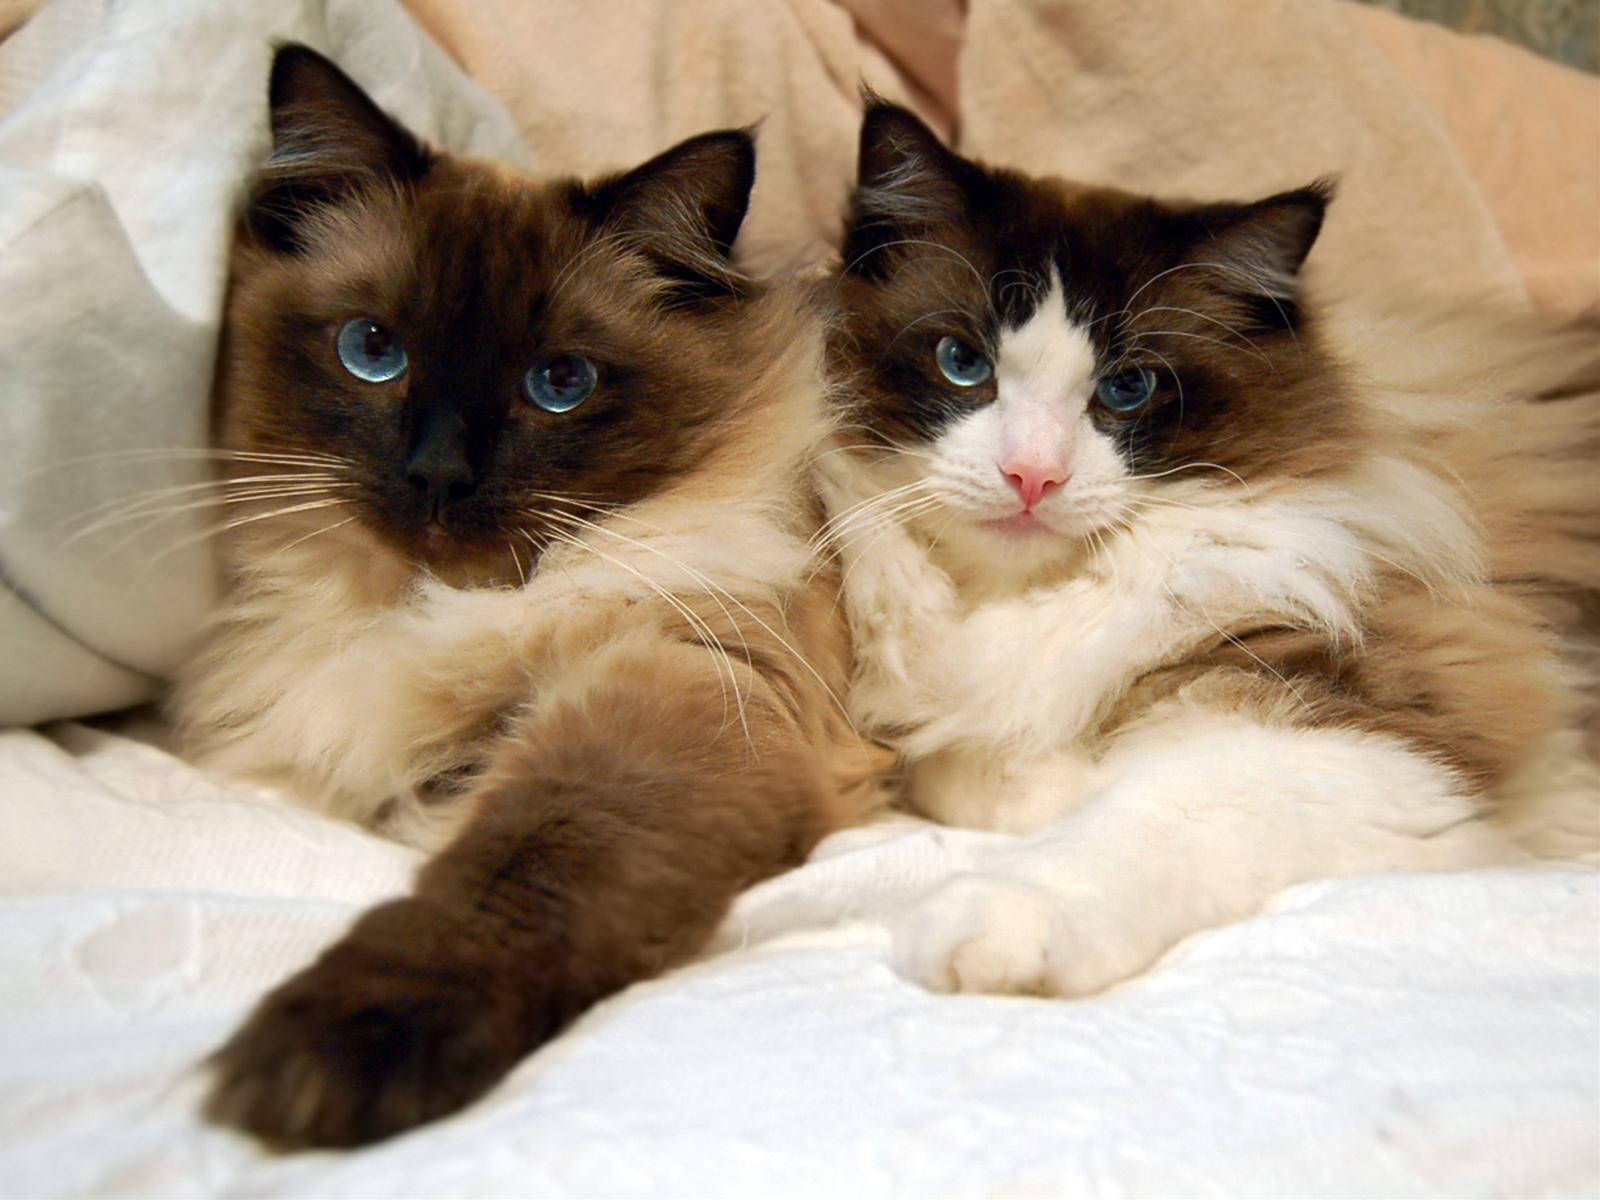 かわいい猫画像No.4「猫−ラグドールの壁紙画像「仲良し兄弟・黒い顔と前足」」